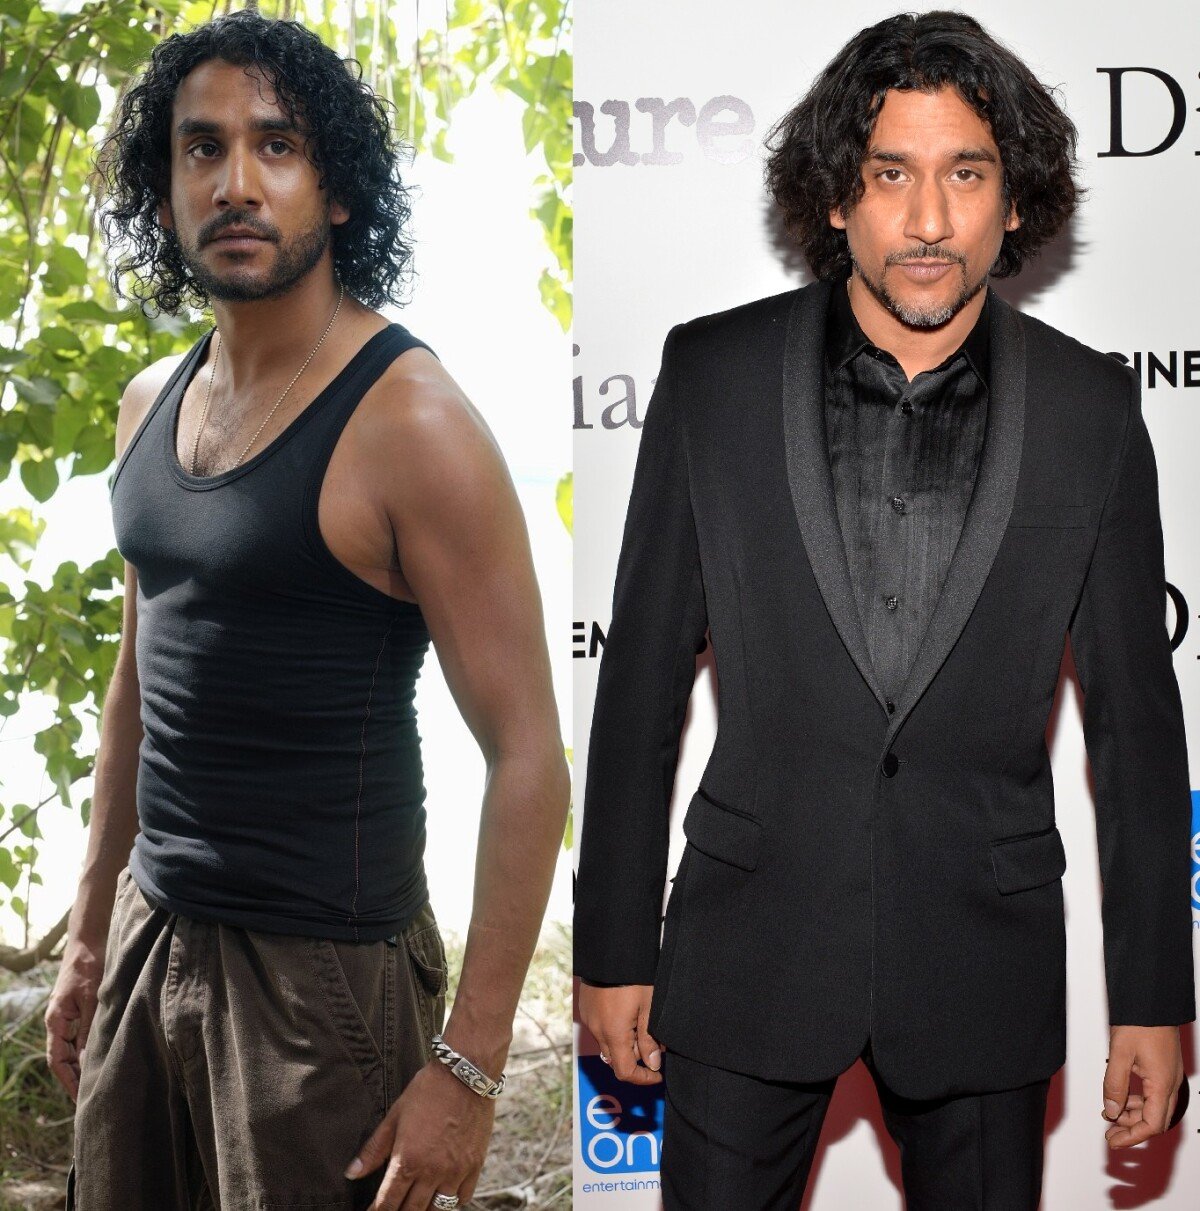 Foto: Naveen Andrews deu vida ao personagem Sayid Jarrah em 'Lost